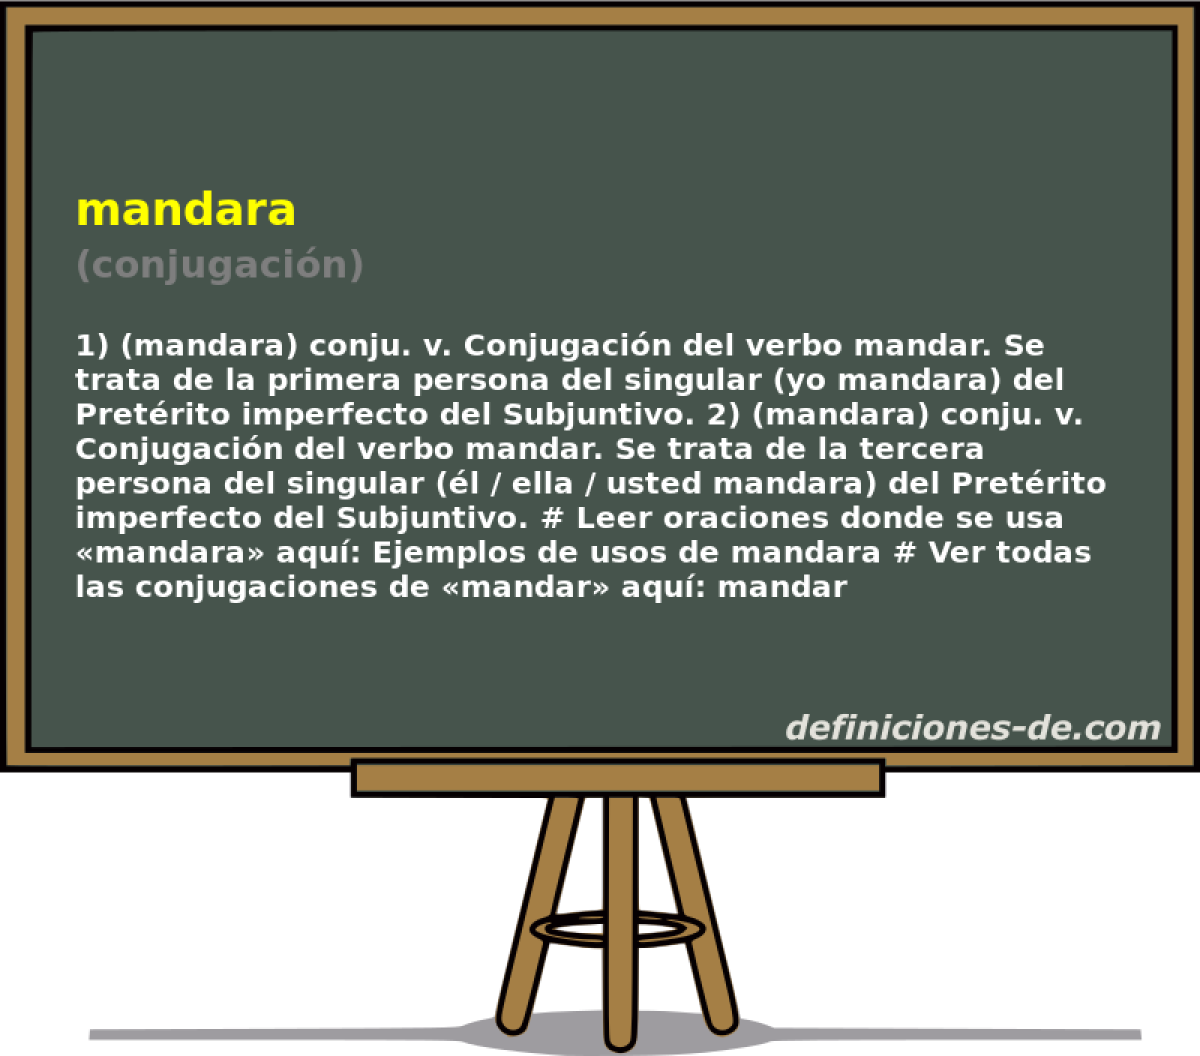 mandara (conjugacin)